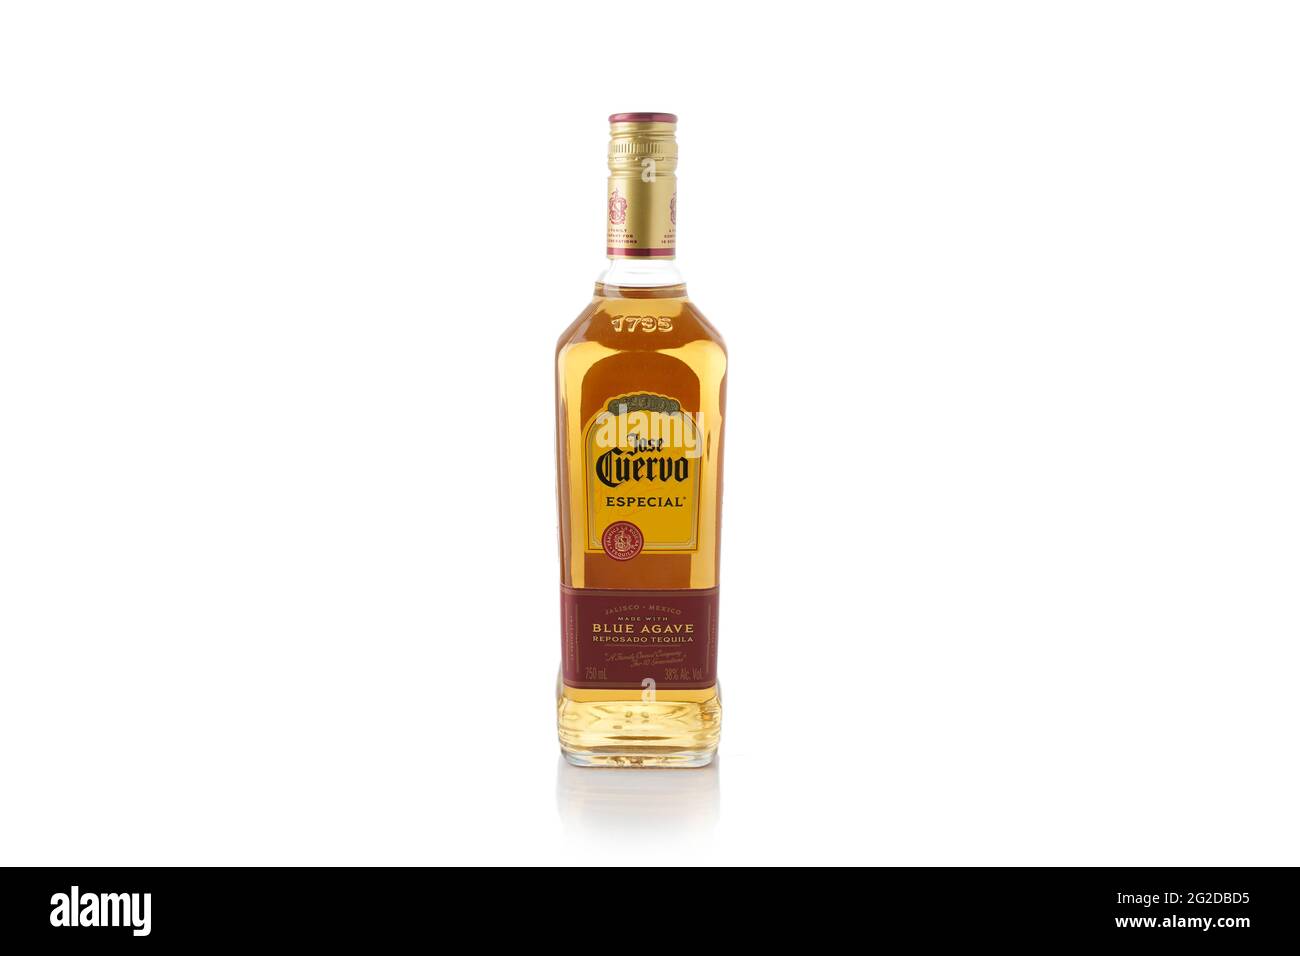 Flasche Jose cuervo goldener Tequila auf weißem Hintergrund. Alkoholisches Getränk Stockfoto